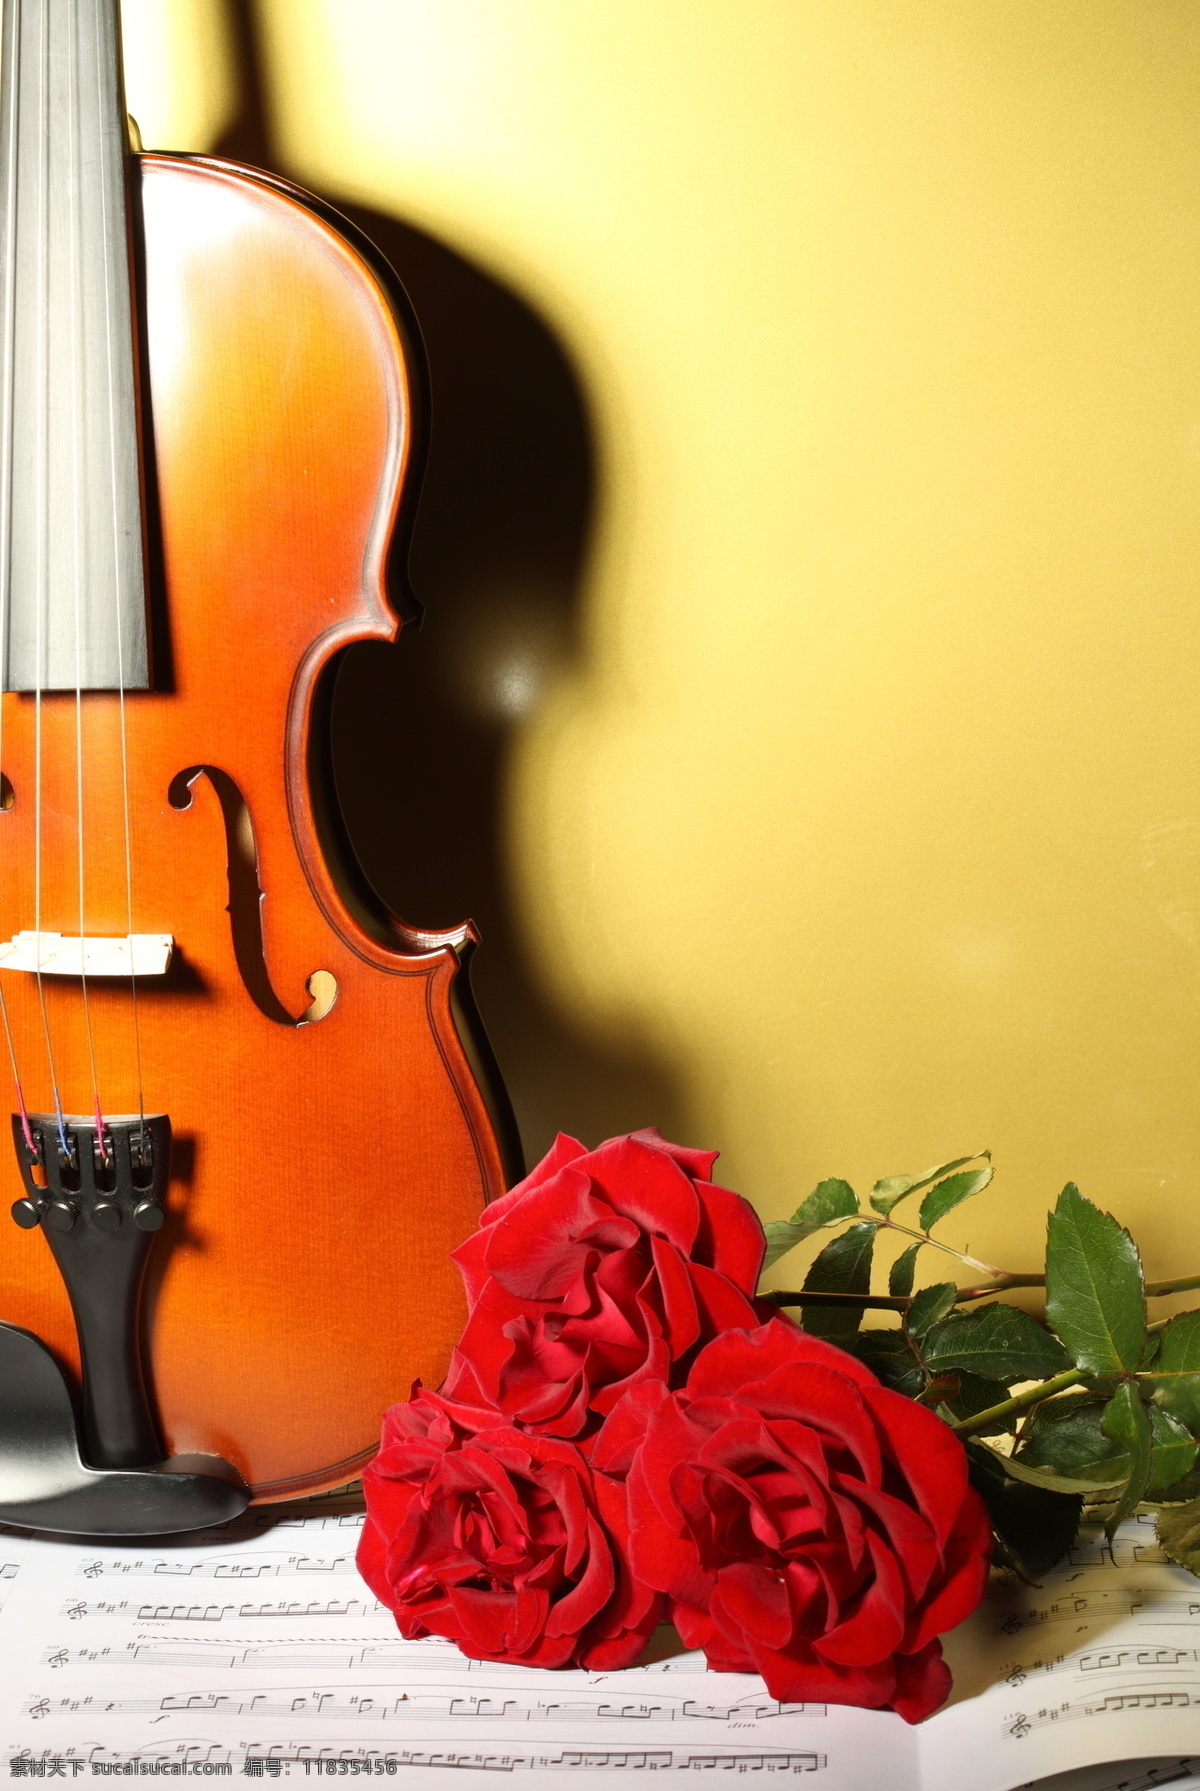 小提琴与音符 小提琴 乐谱 音符 中提琴 玫瑰 玫瑰花 鲜花 文化艺术 音乐 影音娱乐 生活百科 黄色